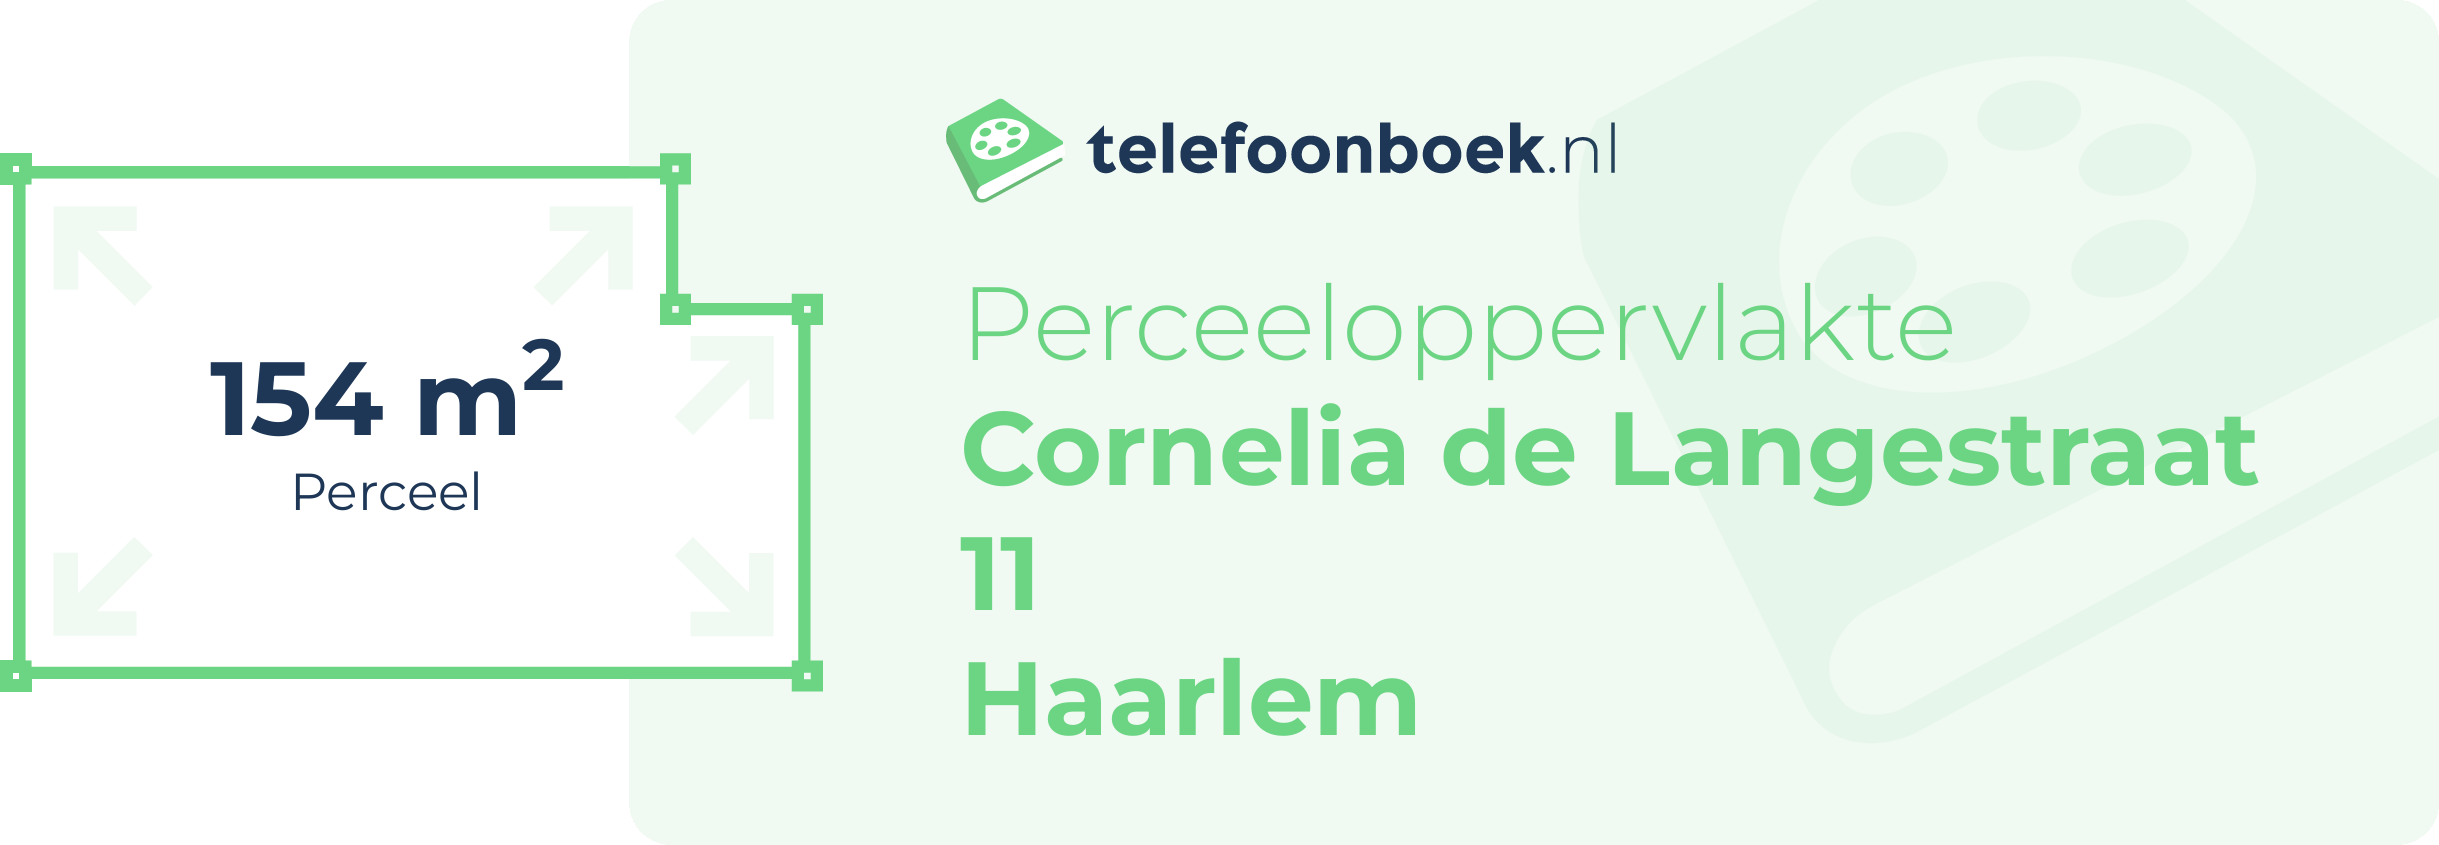 Perceeloppervlakte Cornelia De Langestraat 11 Haarlem